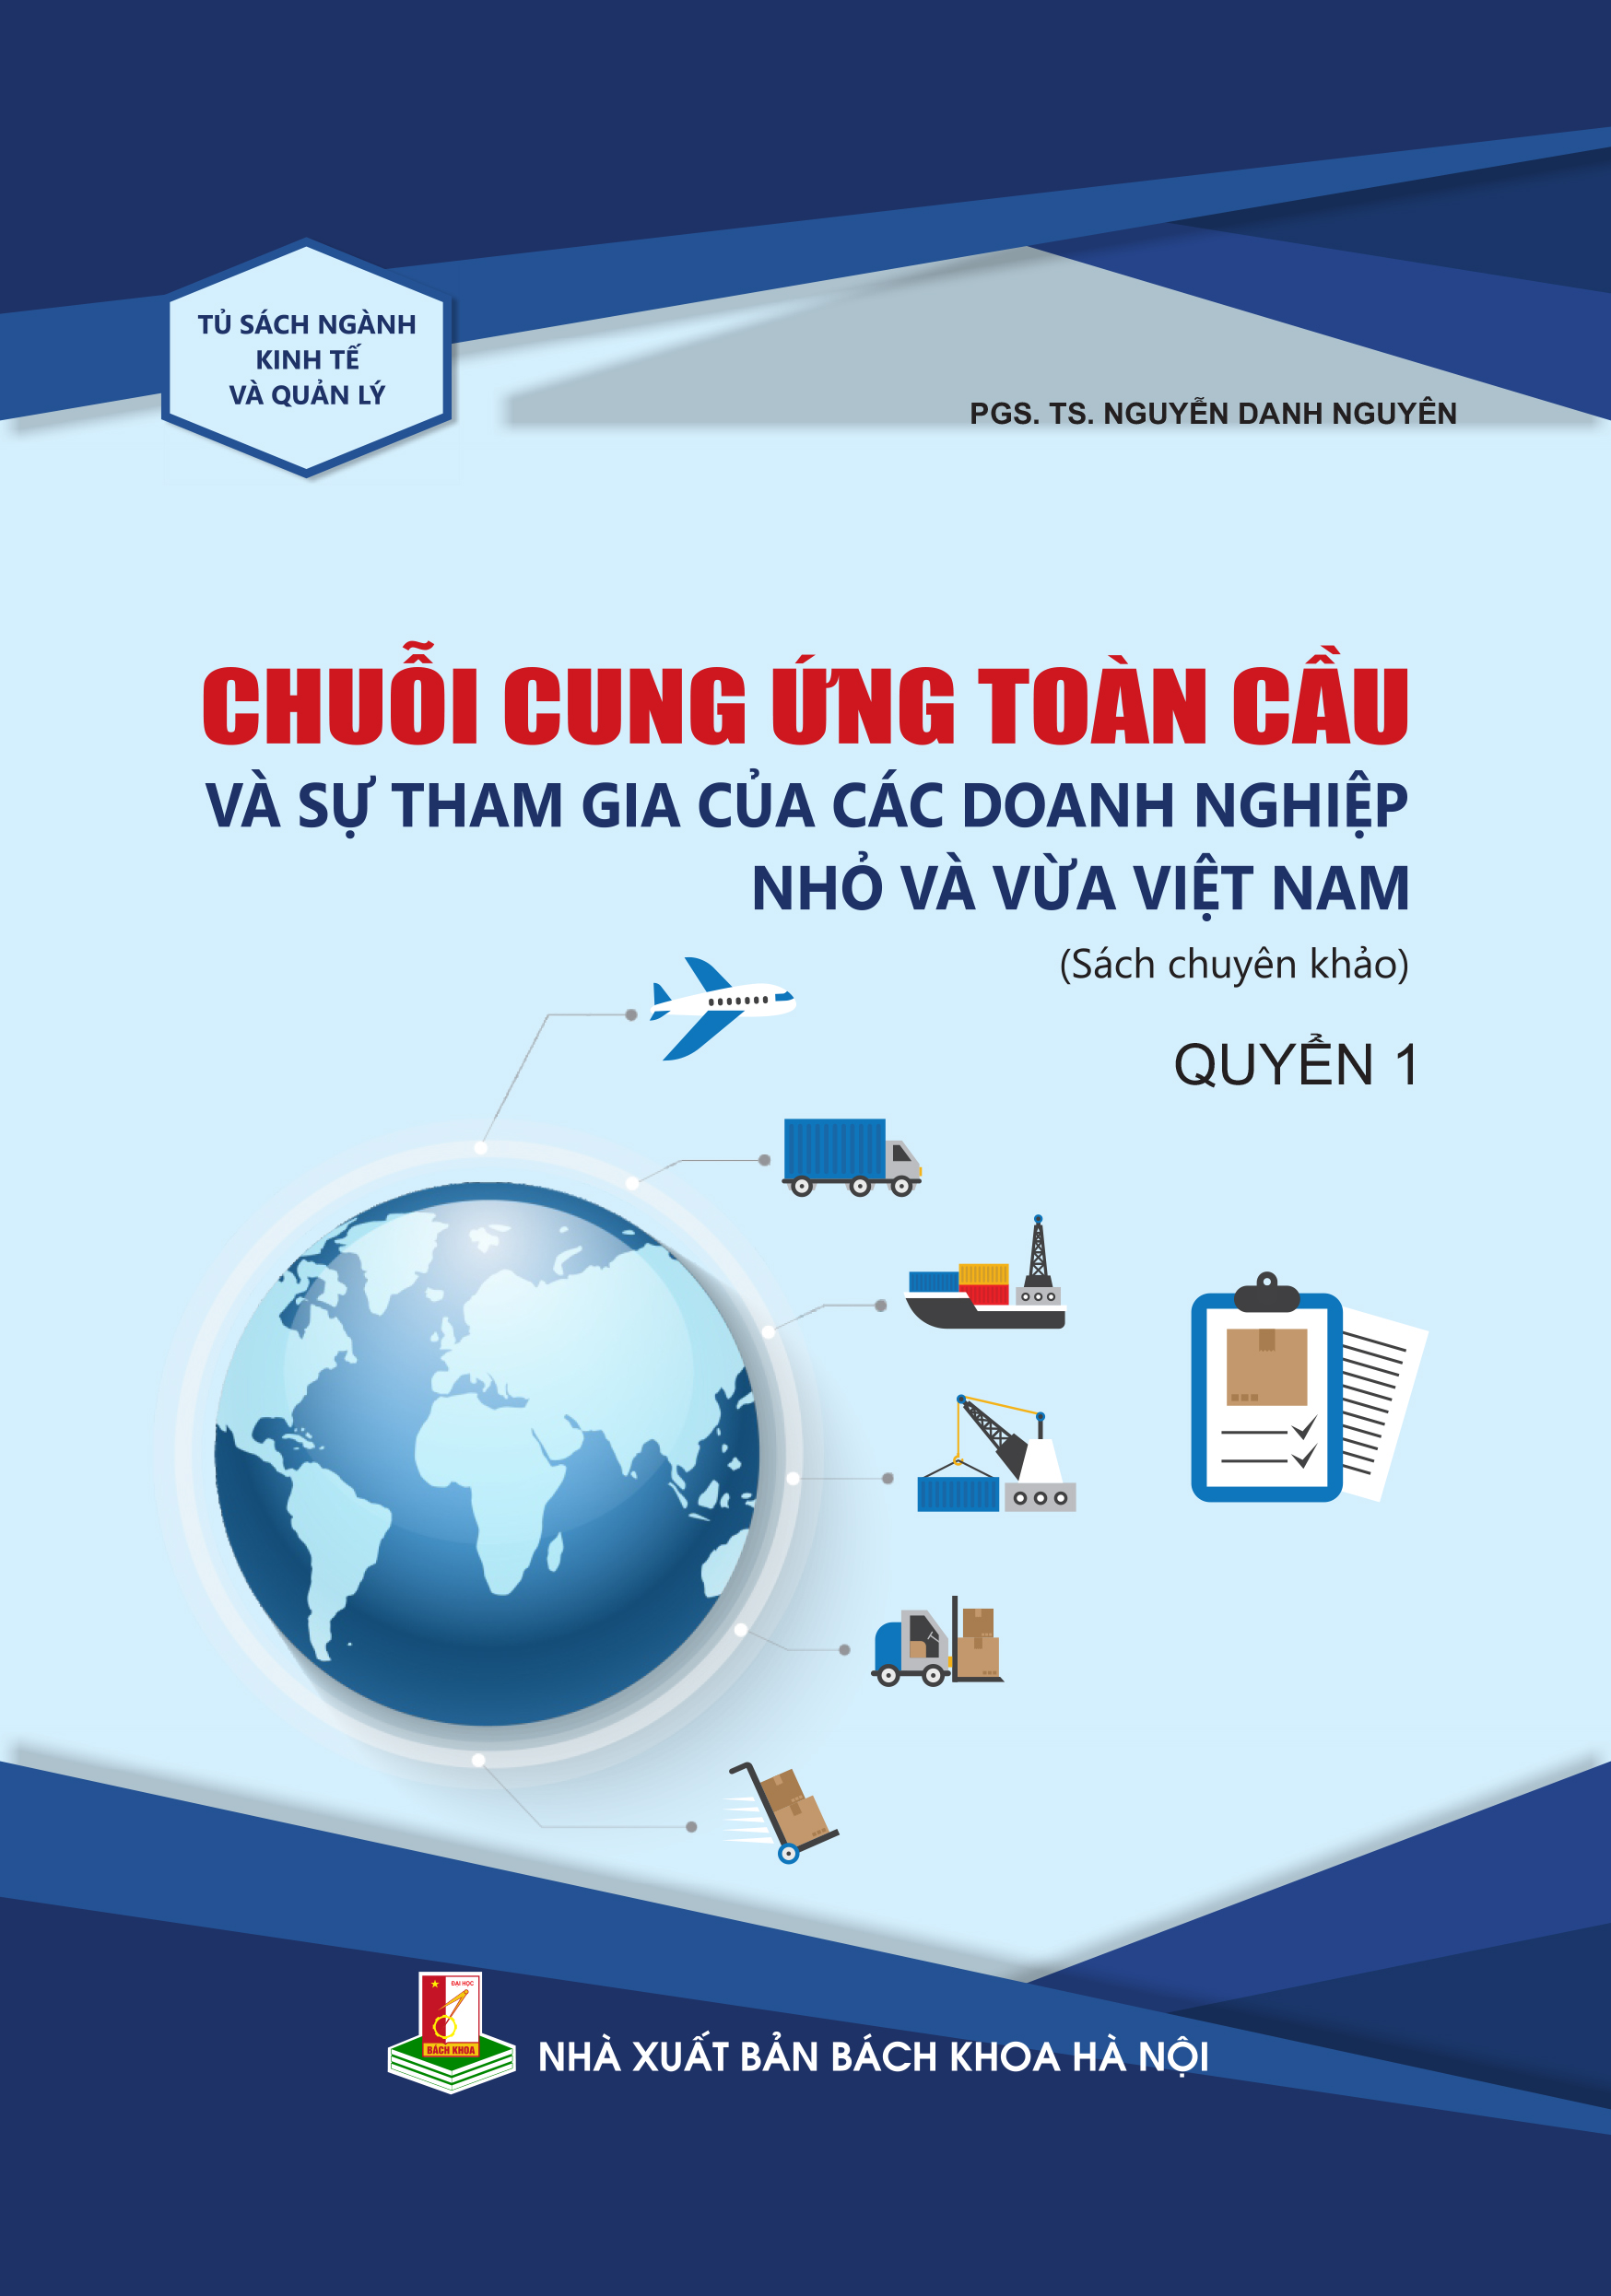 Chuỗi cung ứng toàn cầu và sự tham gia của các doanh nghiệp nhỏ và vừa Việt Nam - Quyển 1